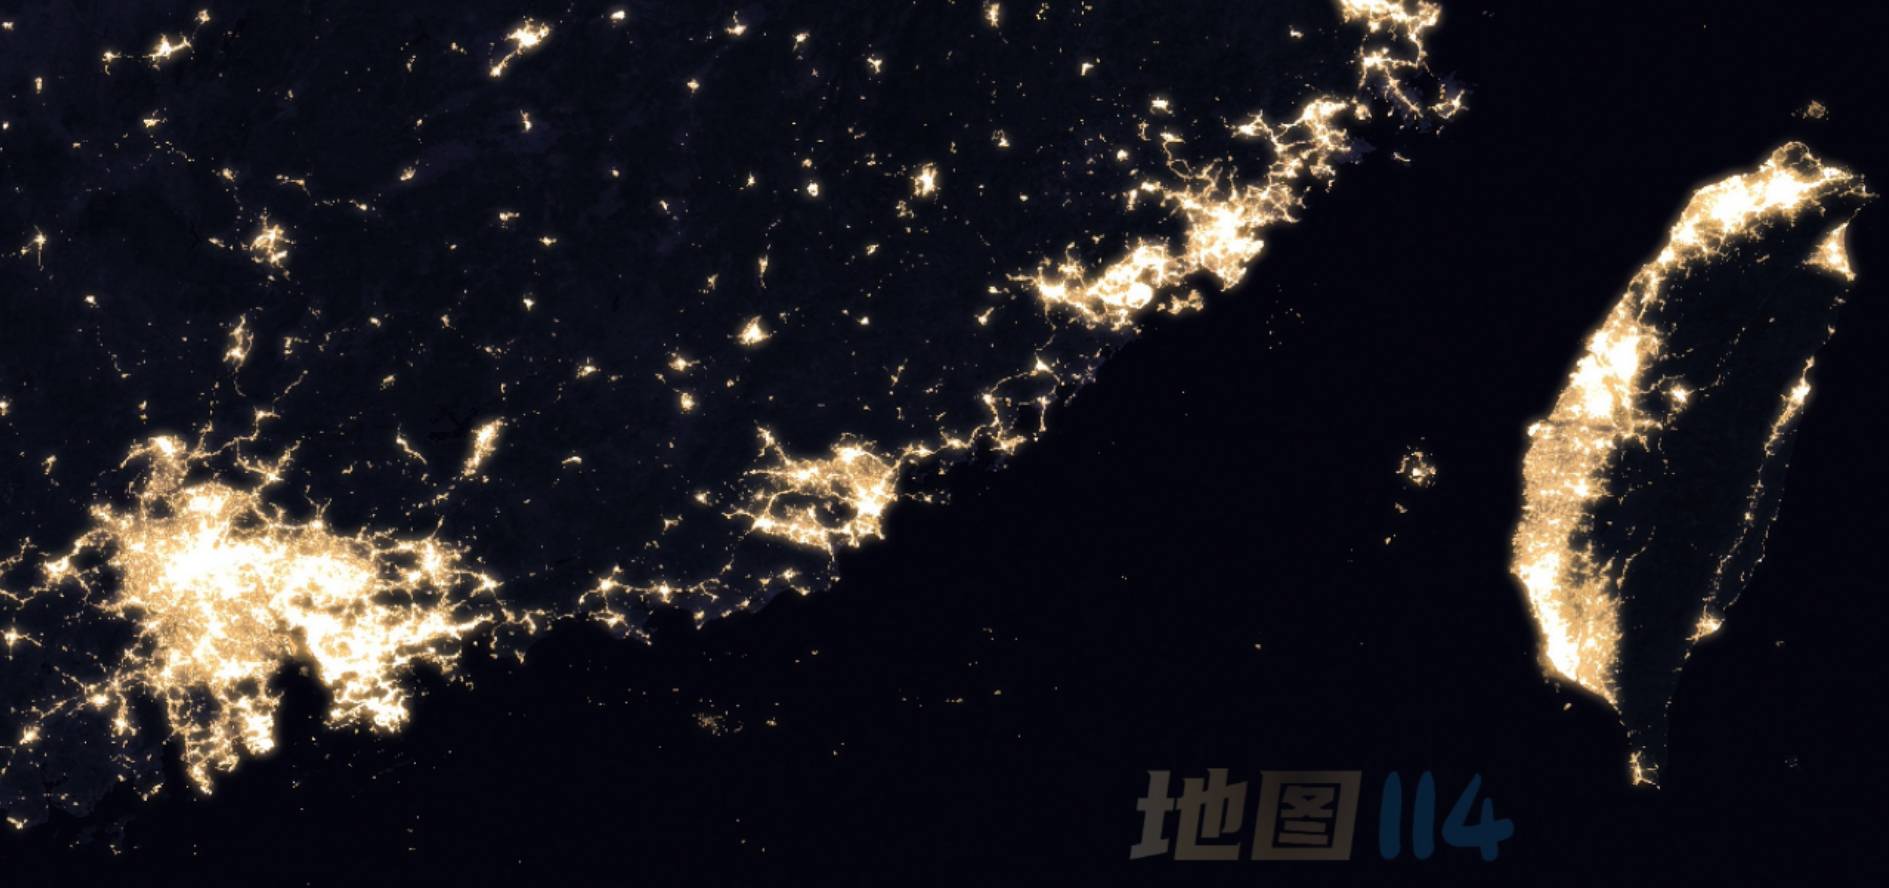 珠三角至台湾夜光图.jpg